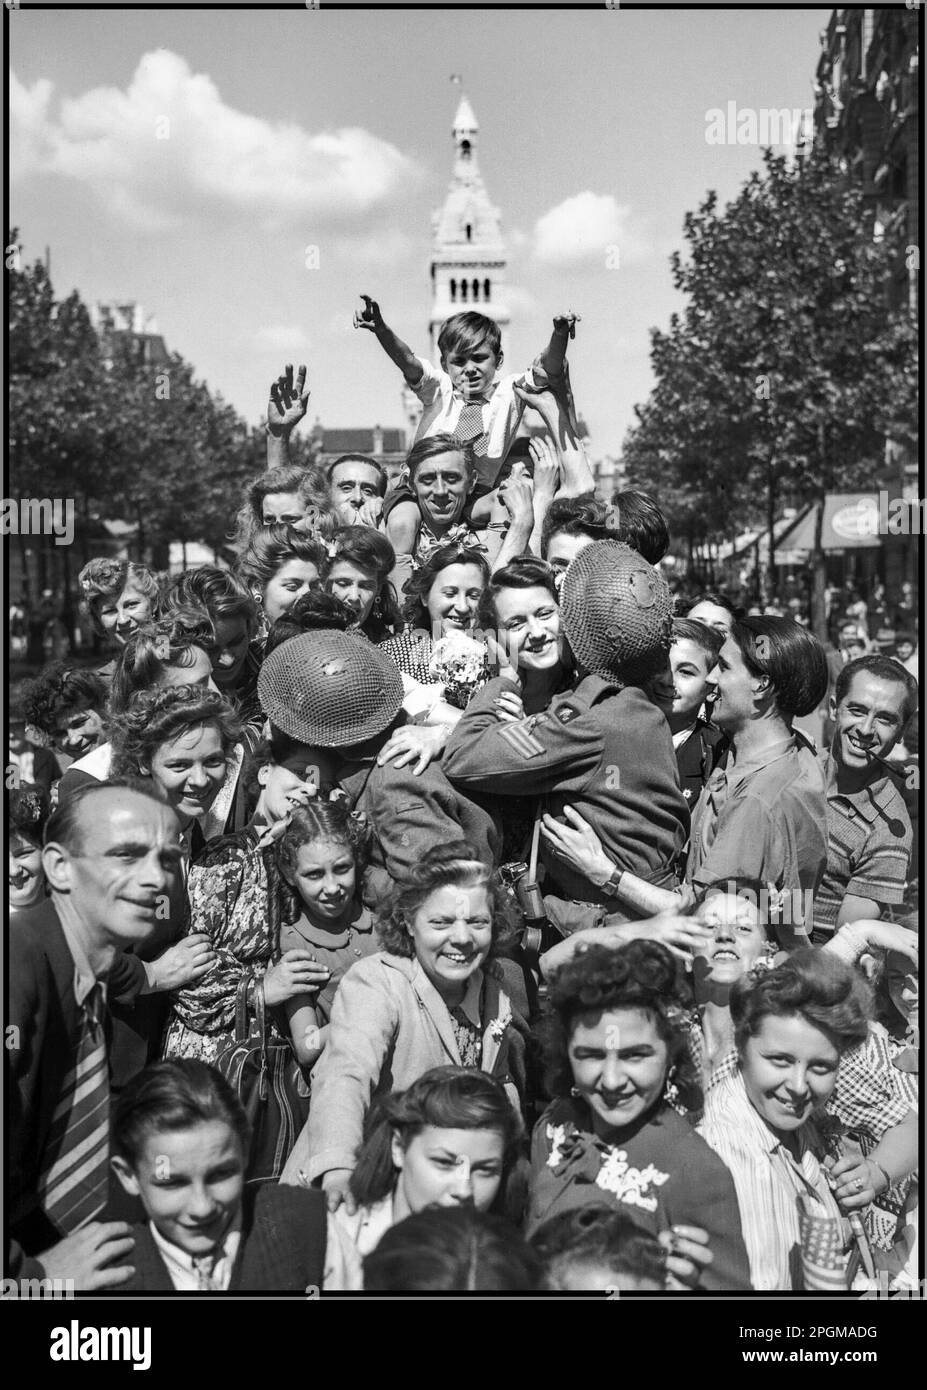 WW2 Paris libération de l'Allemagne nazie. Acclamant les foules françaises extatiques saluent les troupes britanniques alliées à Paris France 26 août 1944 seconde Guerre mondiale seconde Guerre mondiale Banque D'Images